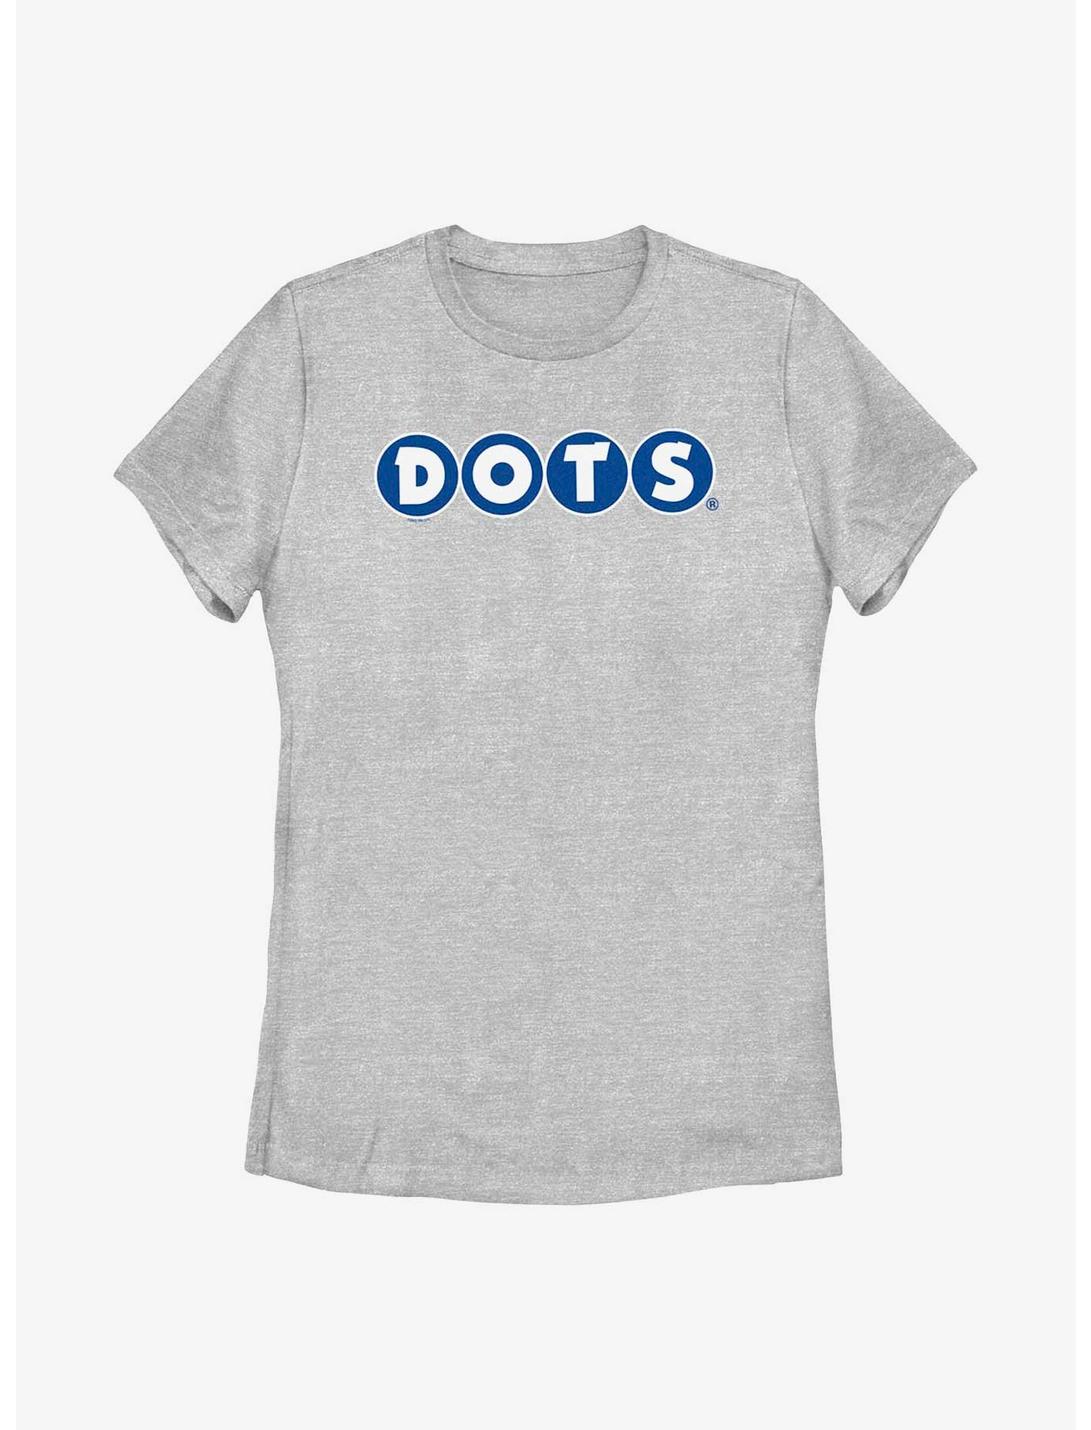 Tootsie Roll Dots Logo Womens T-Shirt, ATH HTR, hi-res